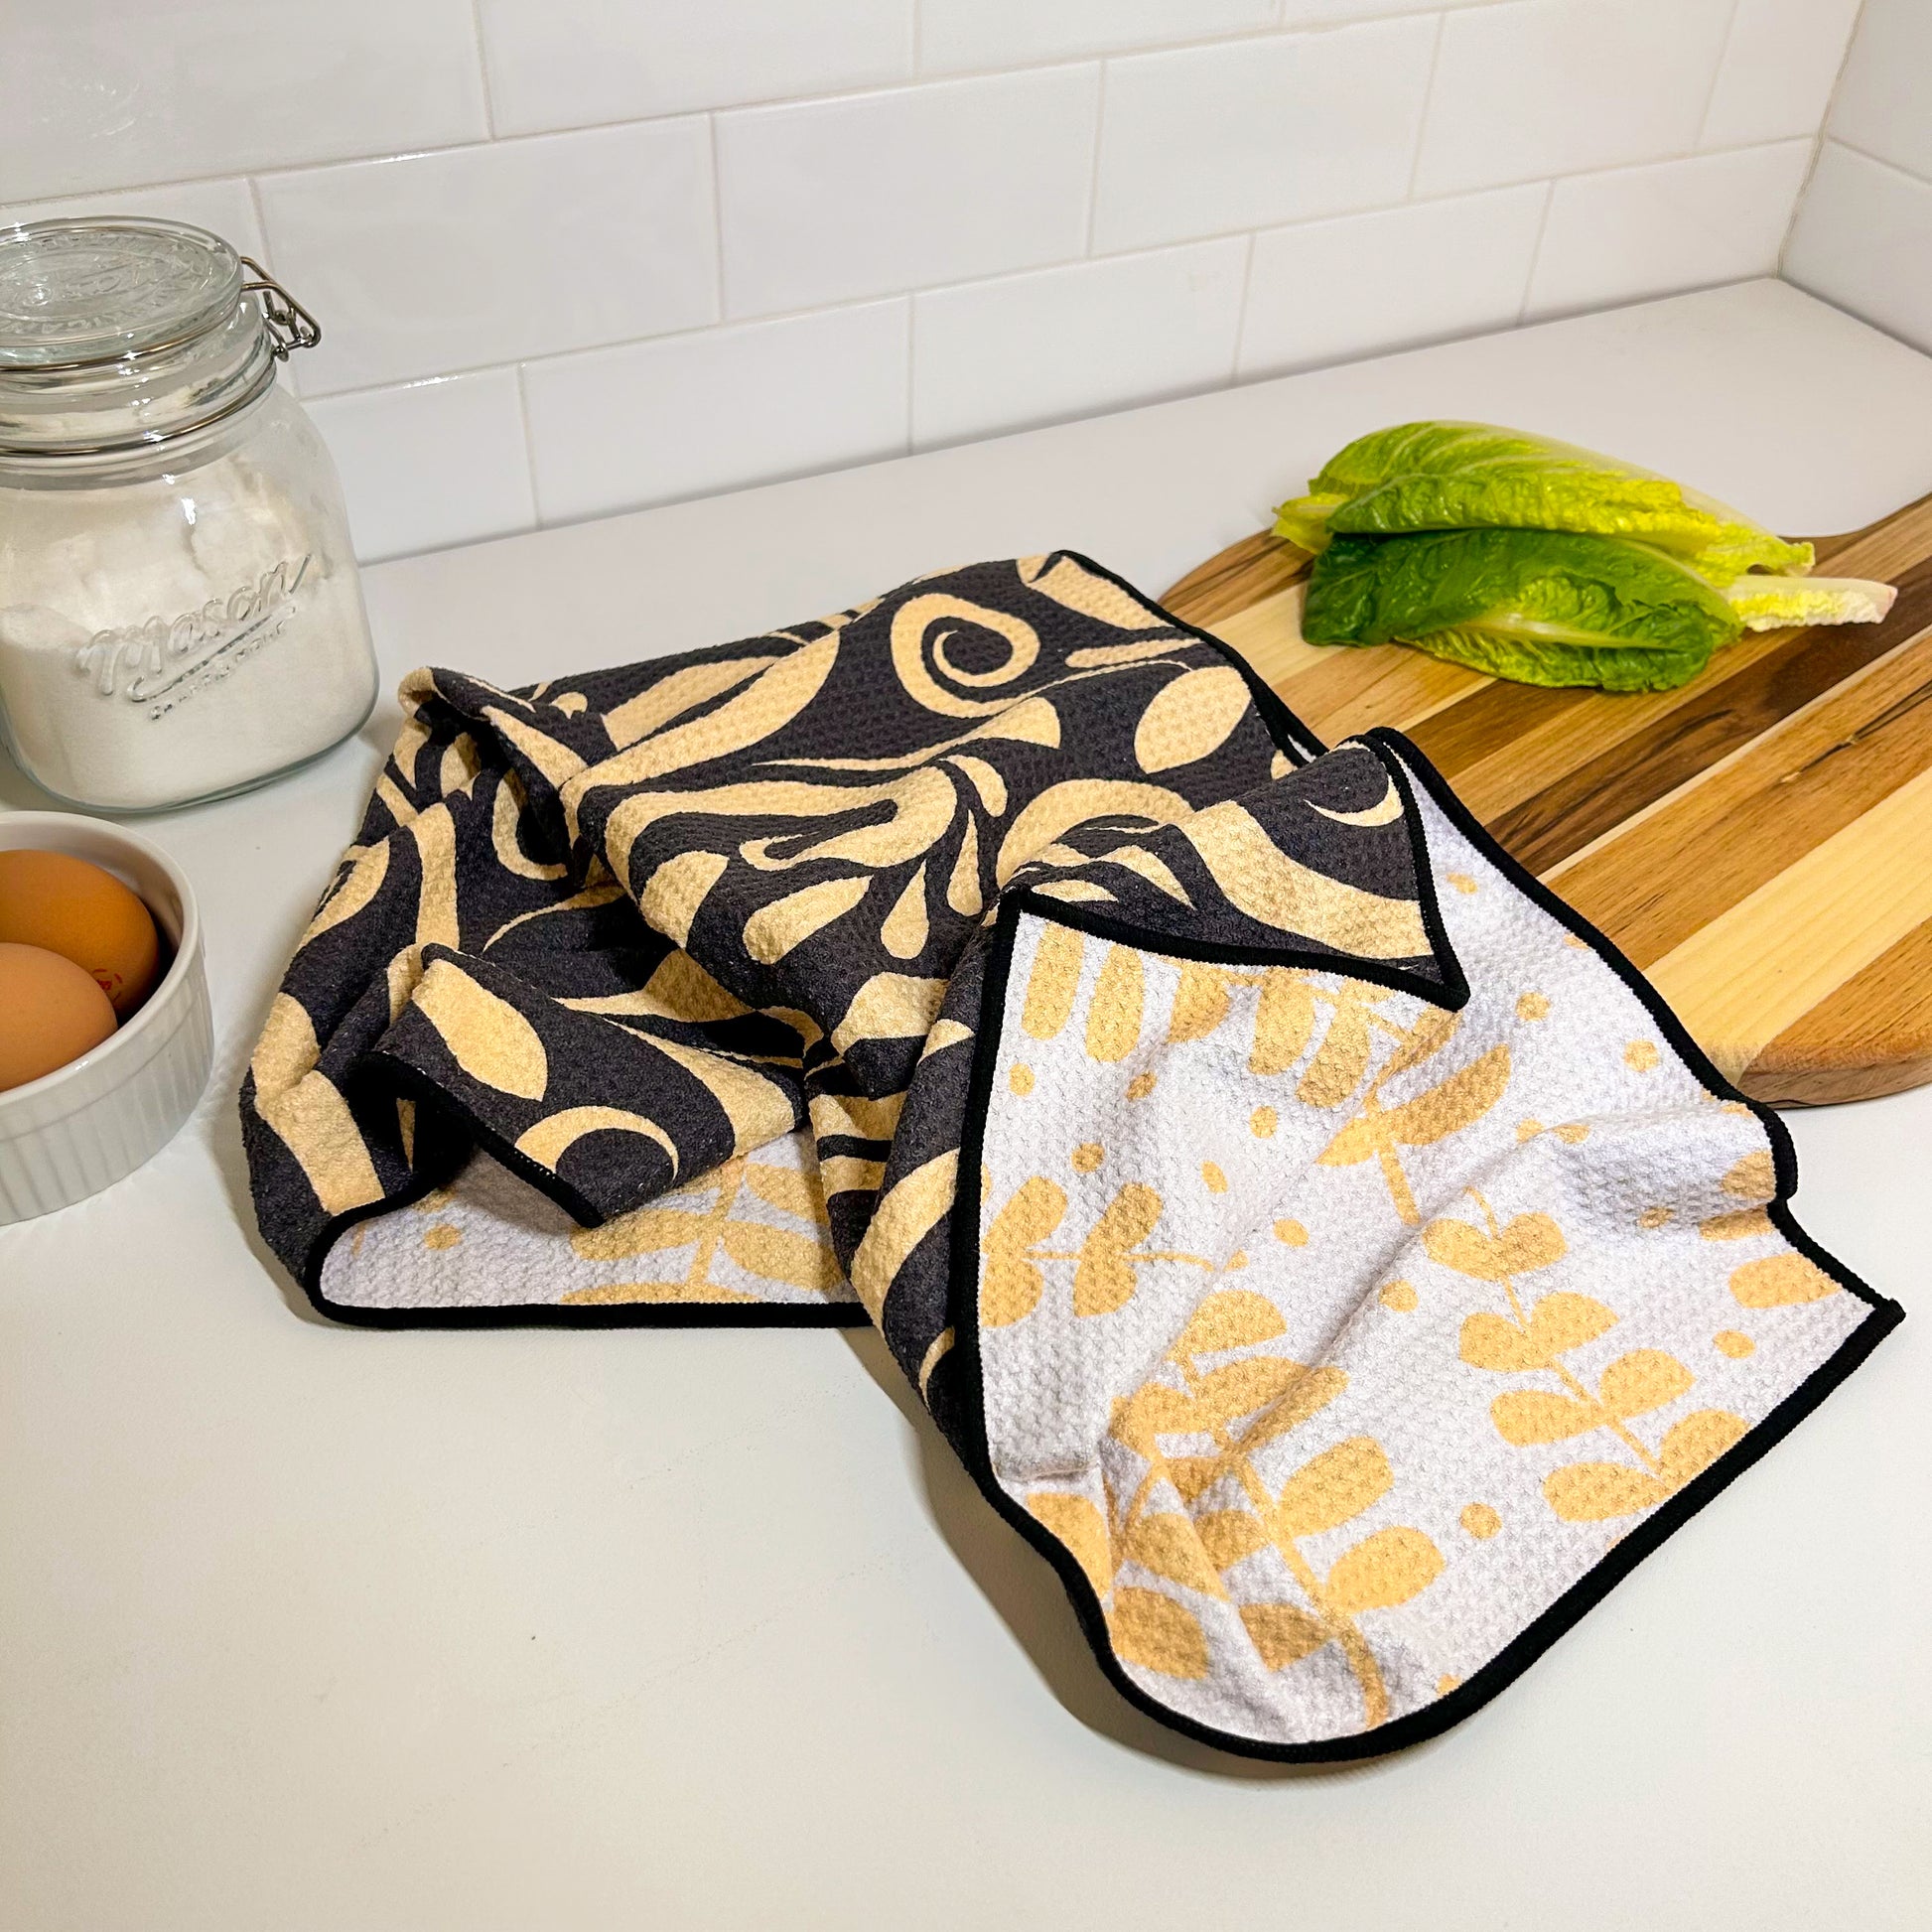 Microfiber Waffle Weave Kitchen, Dish, Hand Towels - Wholesale